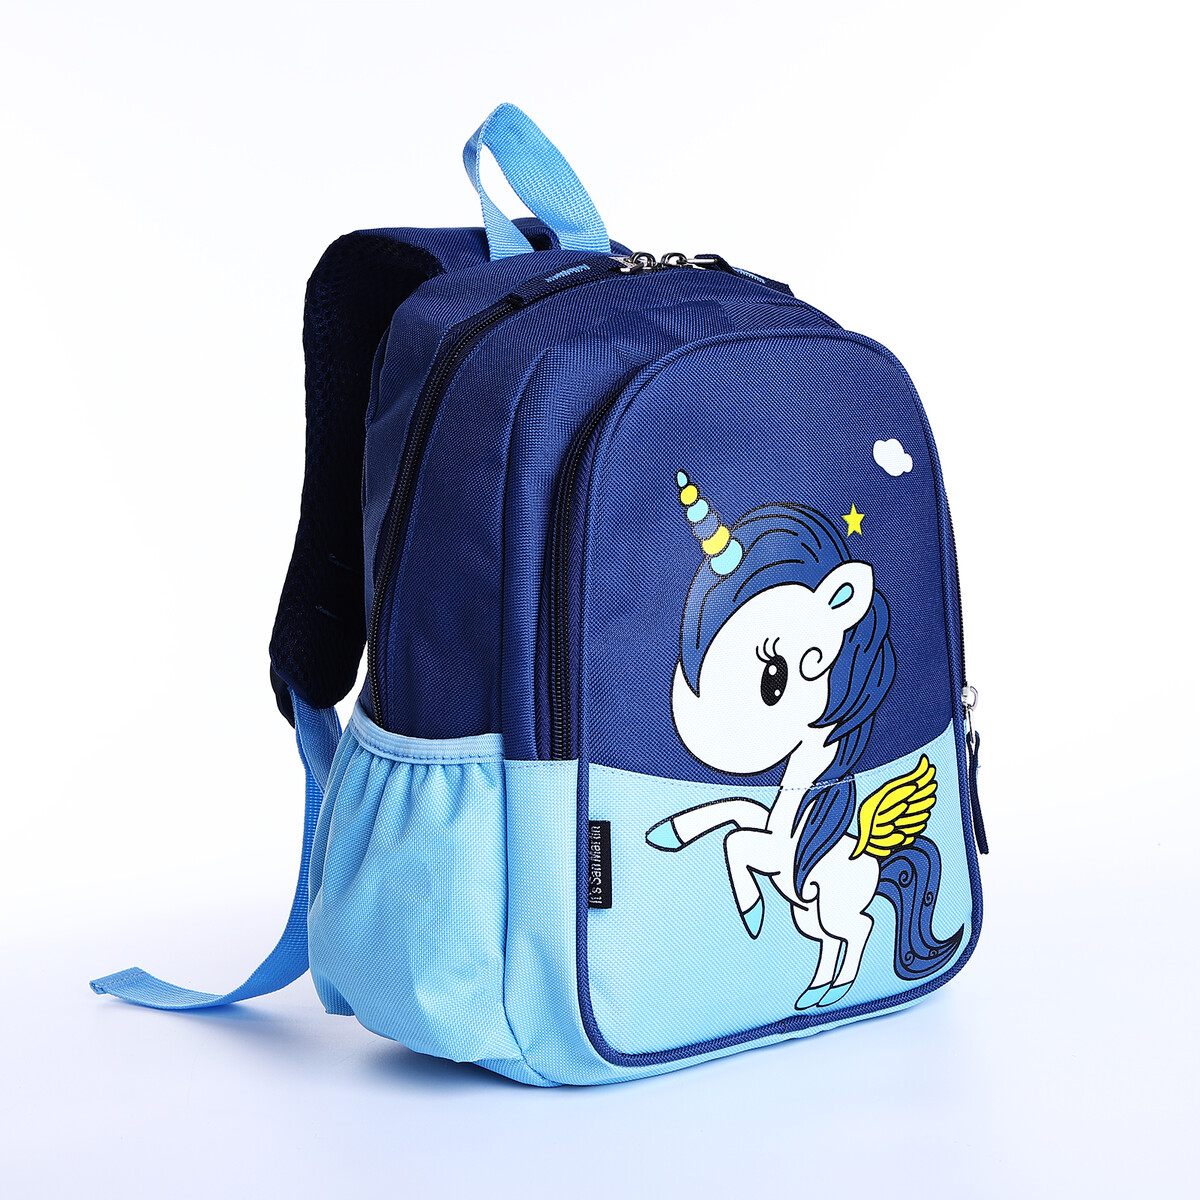 Рюкзак детский на молнии, наружный карман, цвет синий/голубой рюкзак зфтс на молнии наружный карман светоотражающая полоса голубой